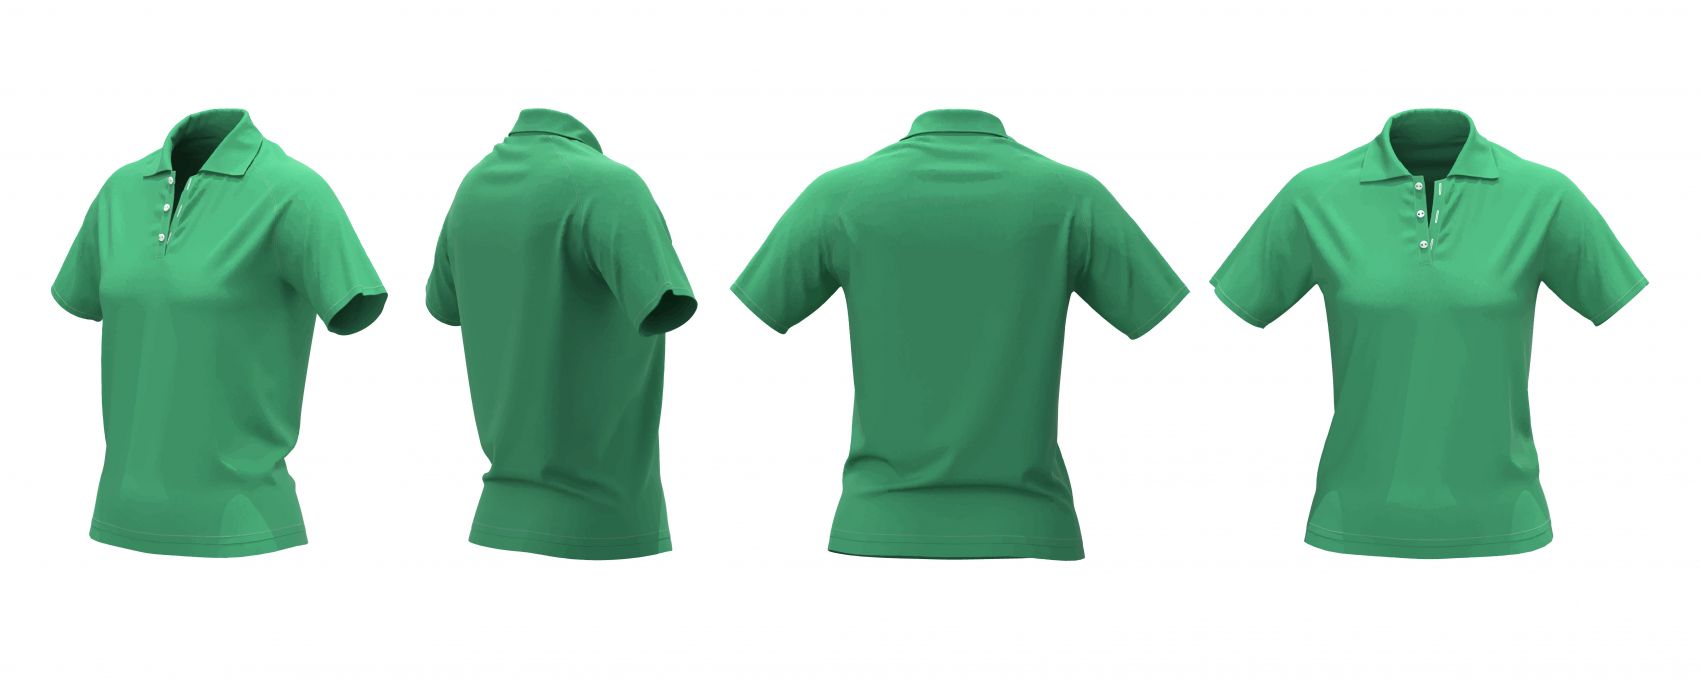 逼真的绿色男性POLO衫服饰素材下载图片